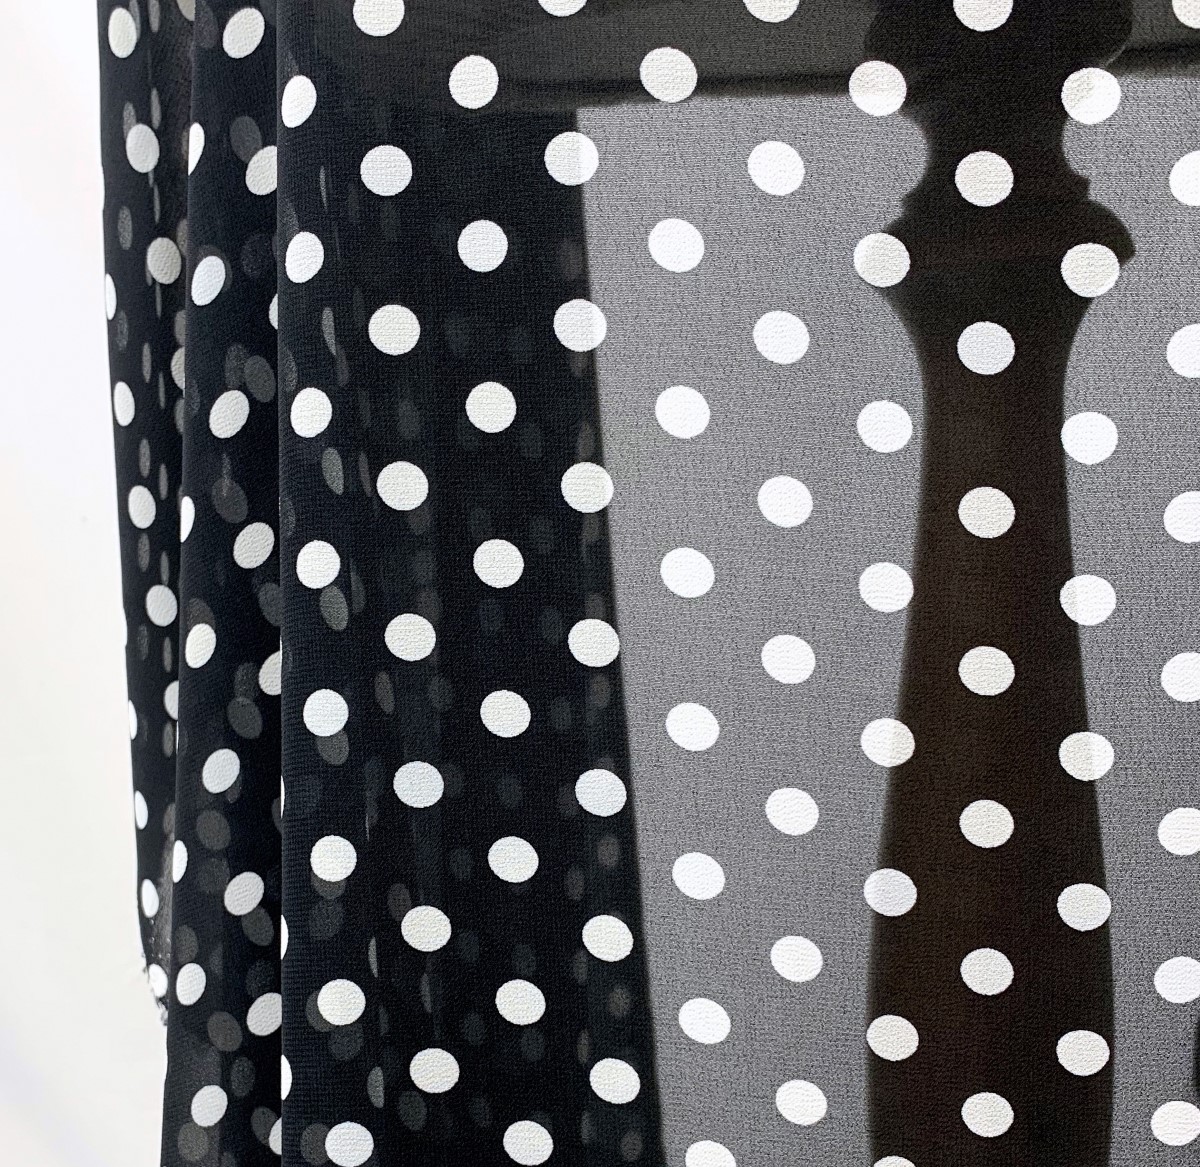 Polyester Spotty Black Chiffon Fabric - Spotty Chiffon - Black